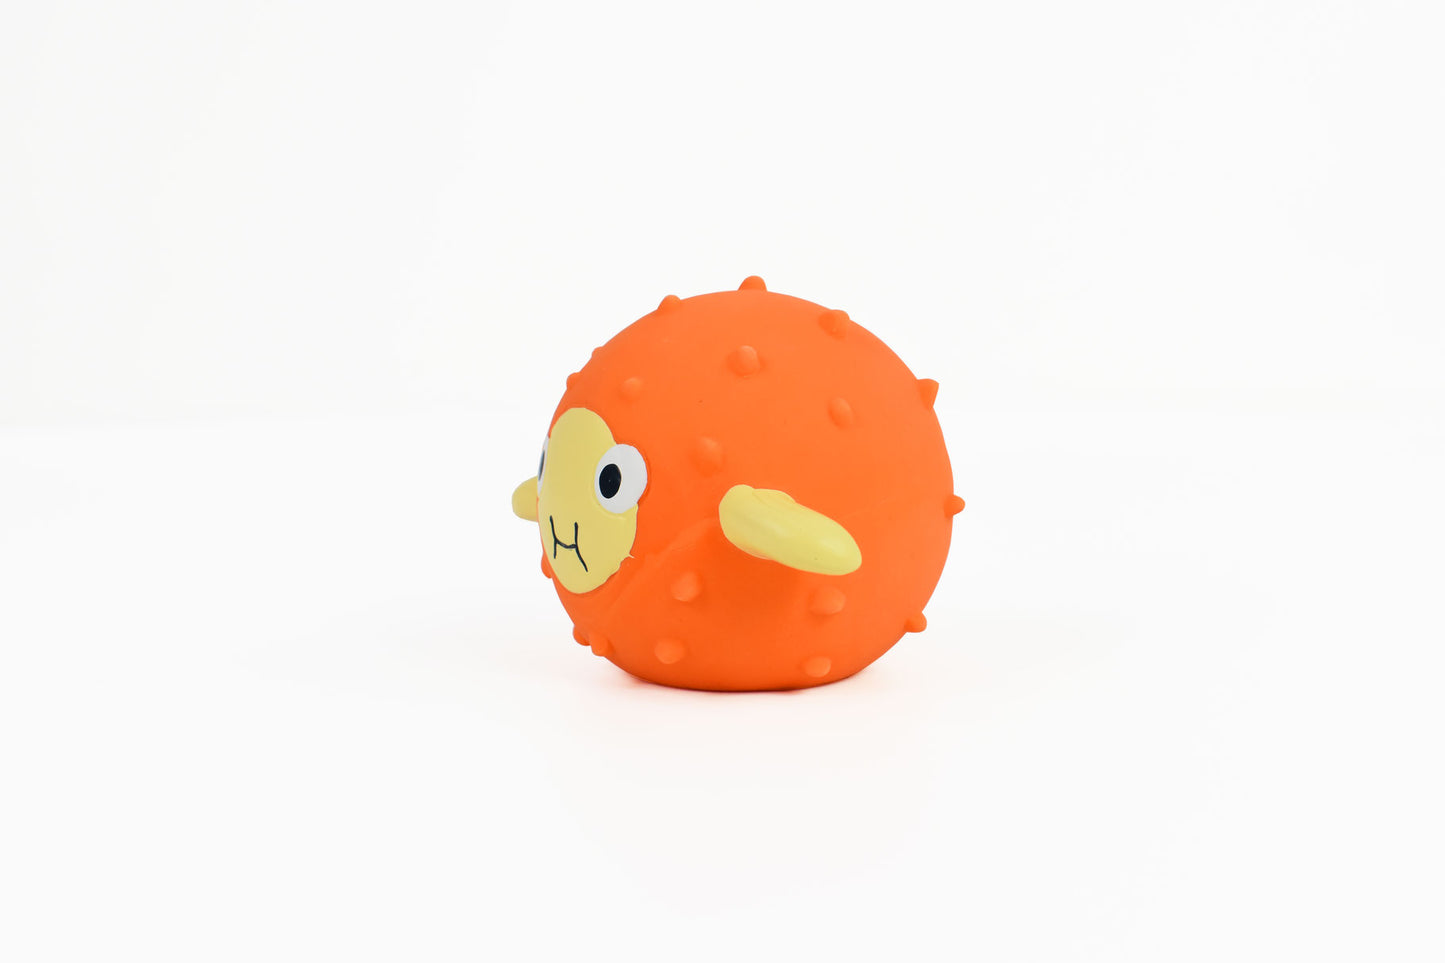 Kugelfisch-Ball in orange Seitenansicht